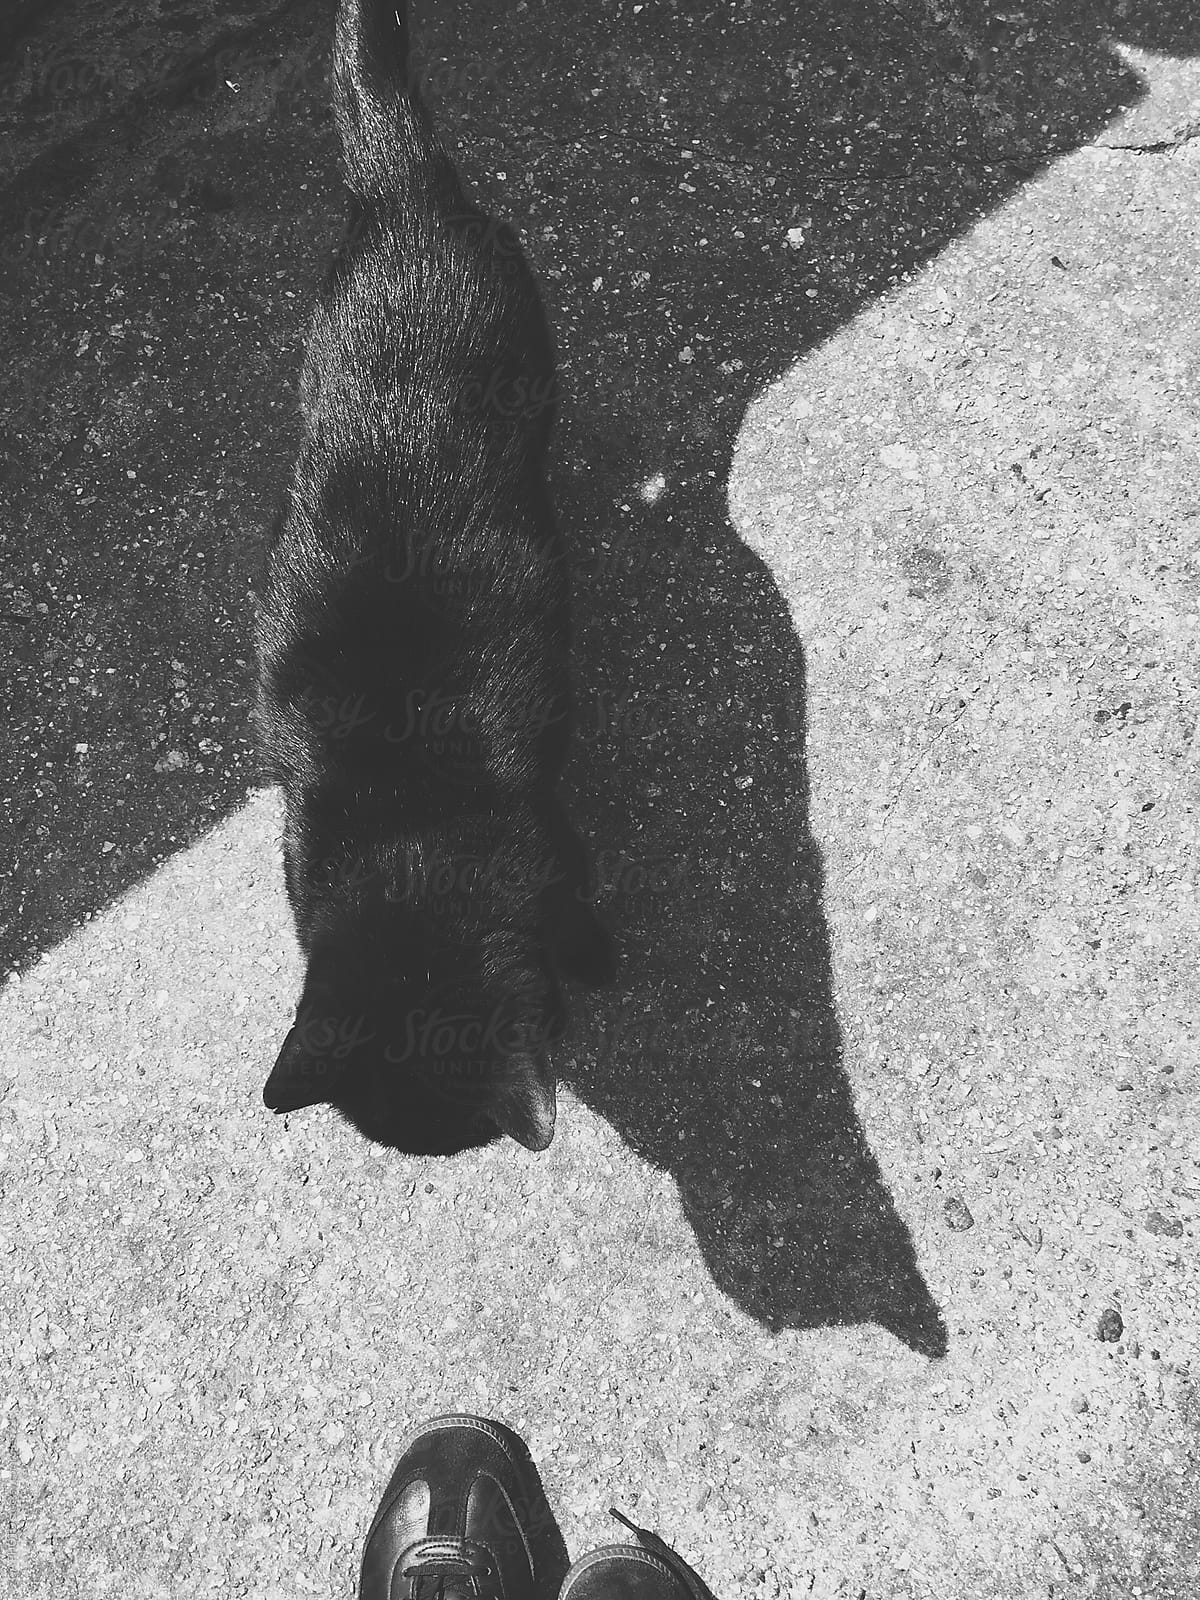 Black Cat Superstitious